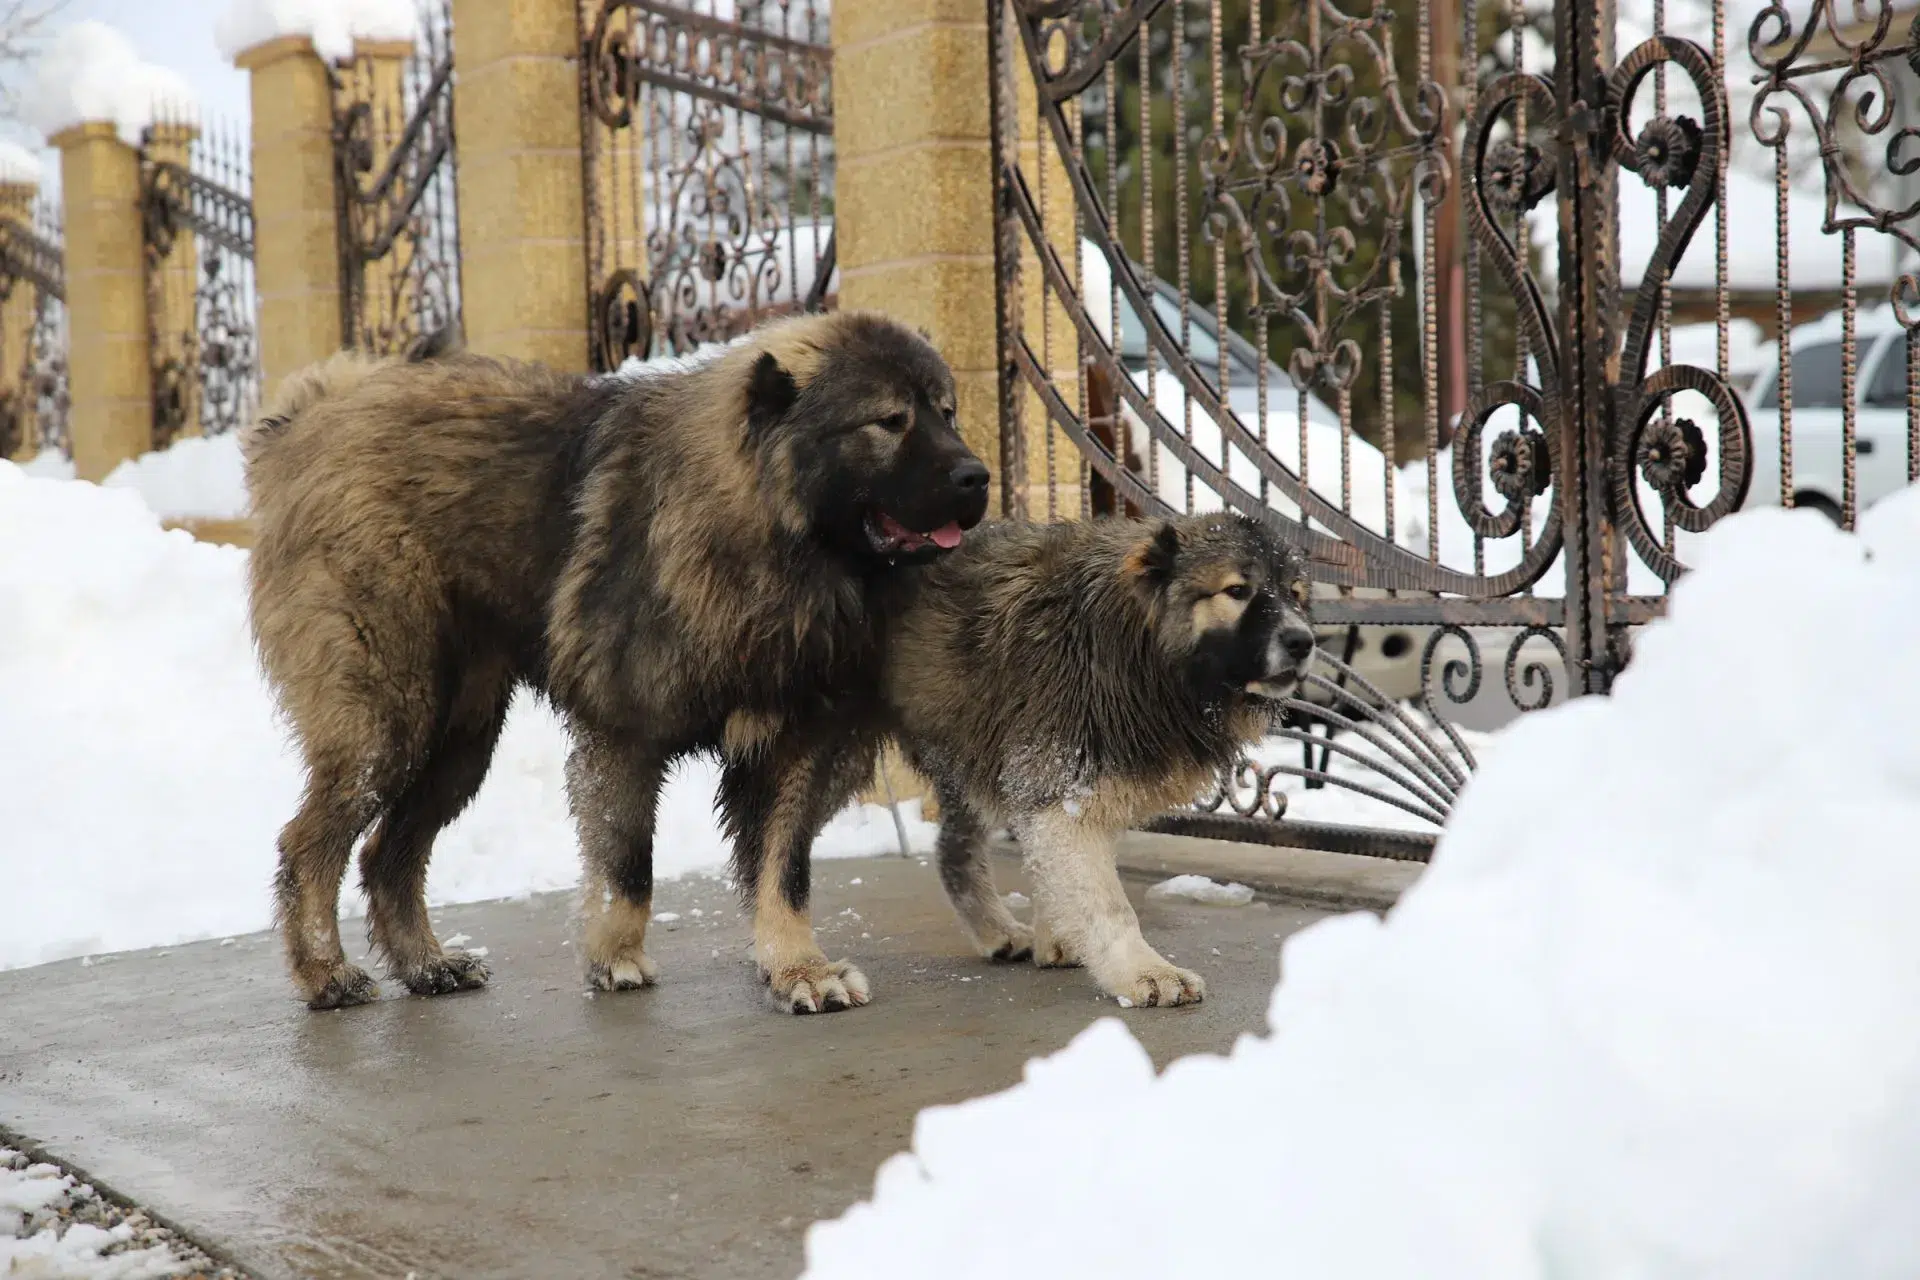 الكلب القوقازي الكبير (Large Caucasian dog)